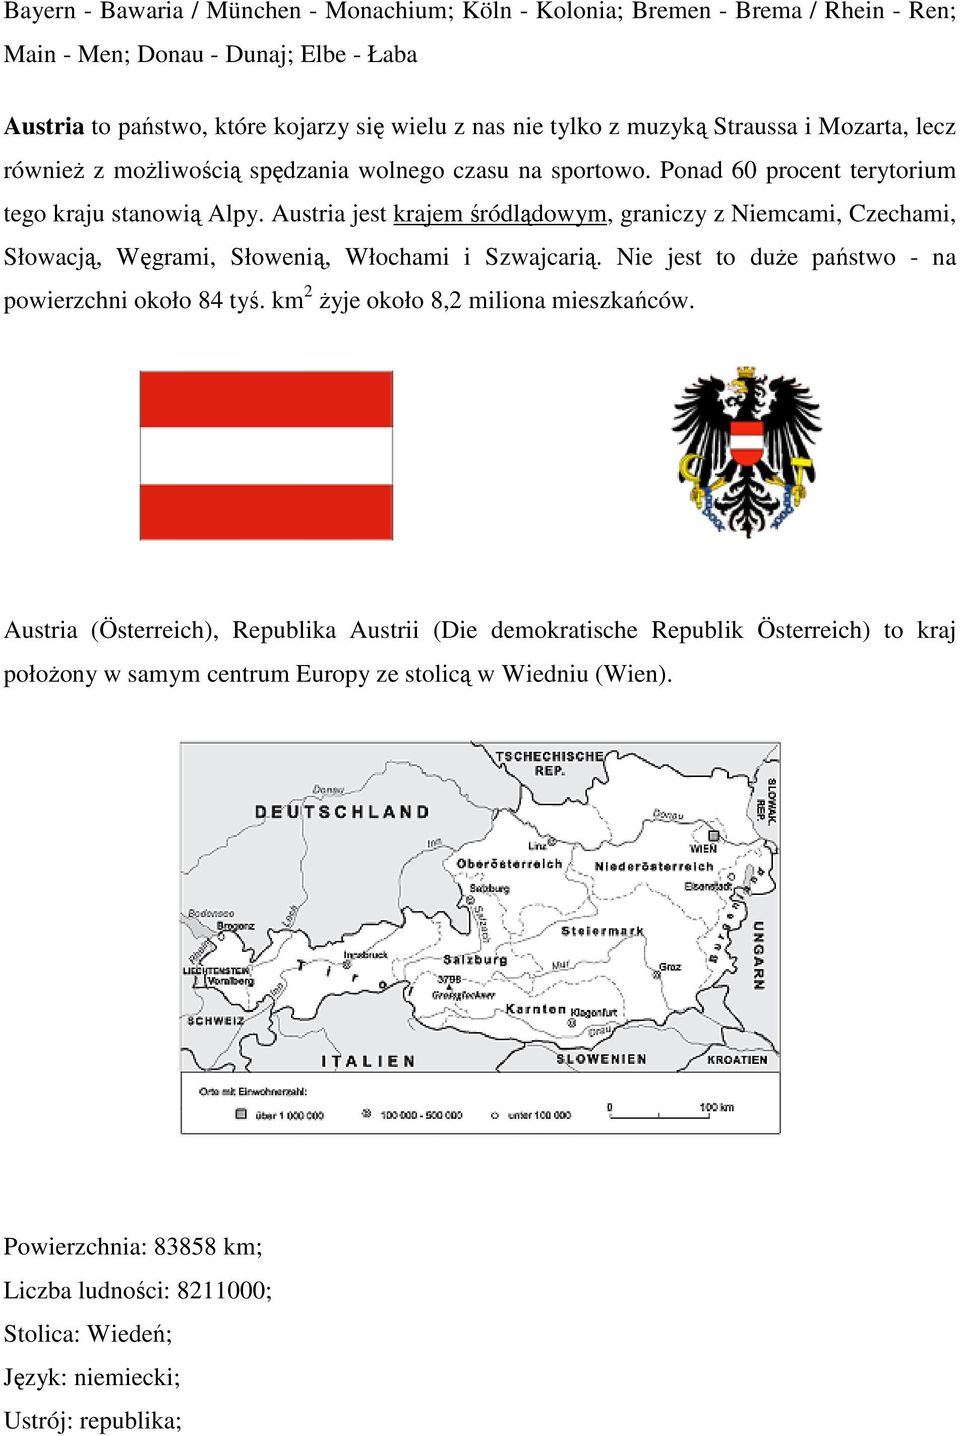 Austria jest krajem śródlądowym, graniczy z Niemcami, Czechami, Słowacją, Węgrami, Słowenią, Włochami i Szwajcarią. Nie jest to duże państwo - na powierzchni około 84 tyś.